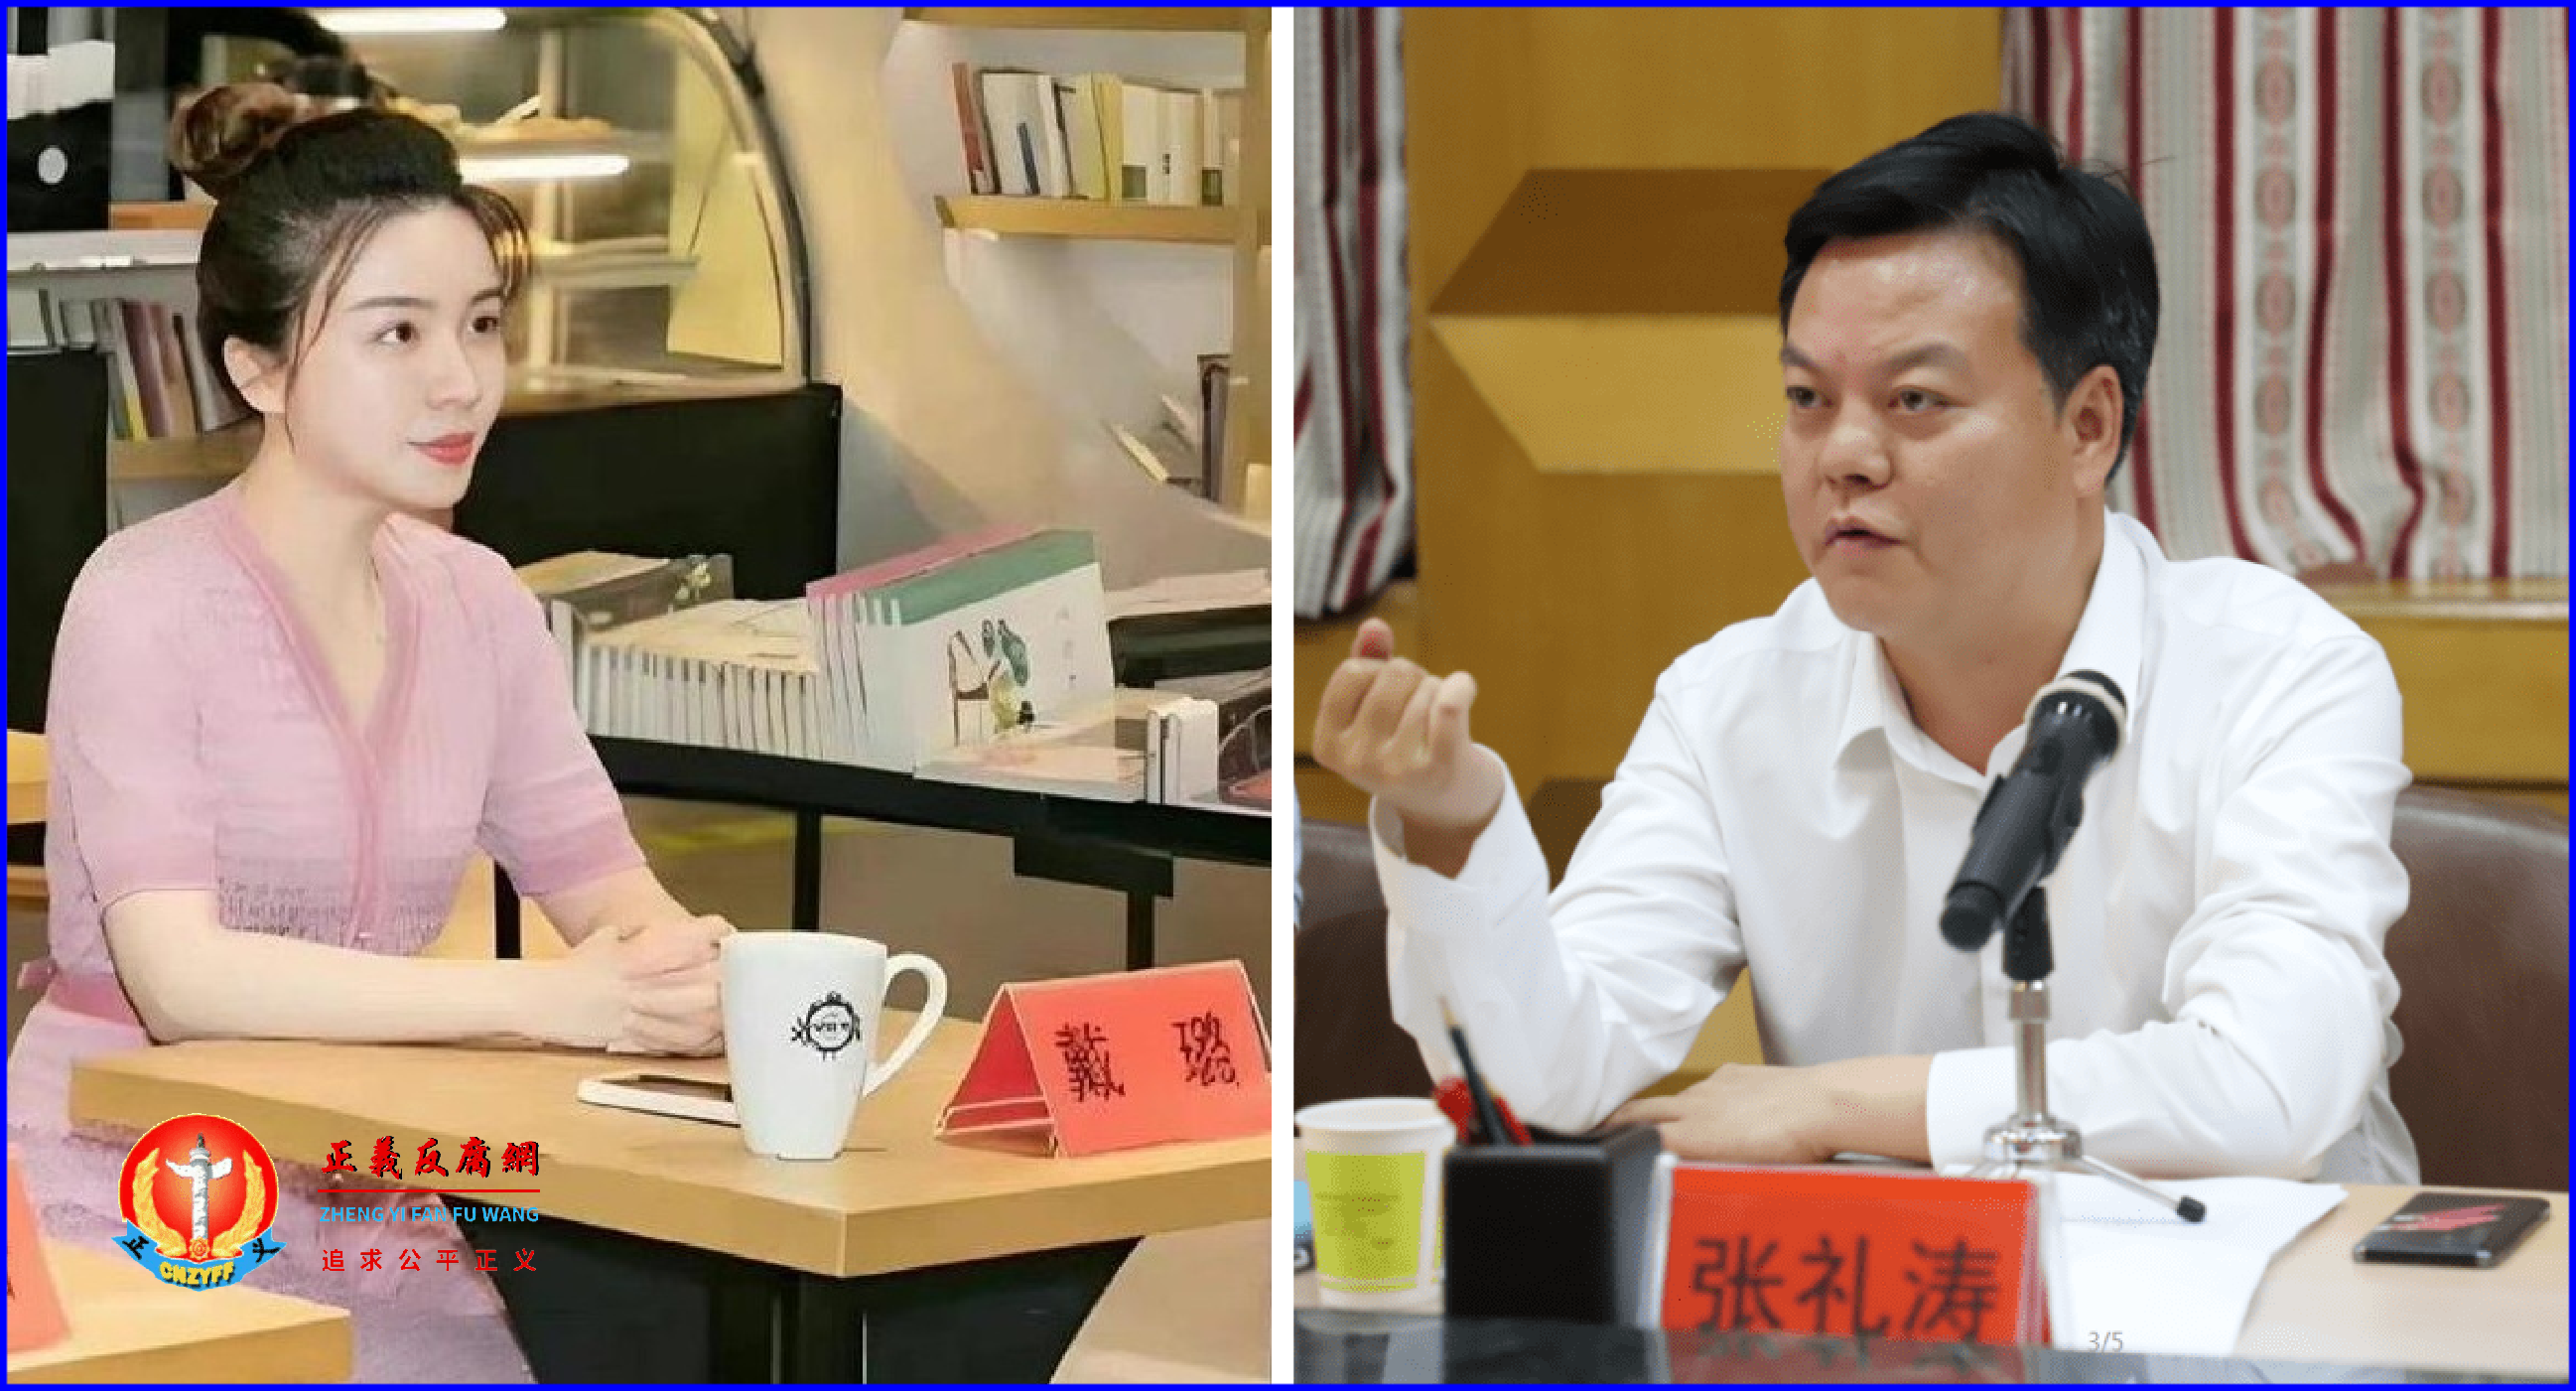 江苏省扬州市副市长张礼涛（右图）与扬州美女官员戴璐（左图）爆出丑闻。.png